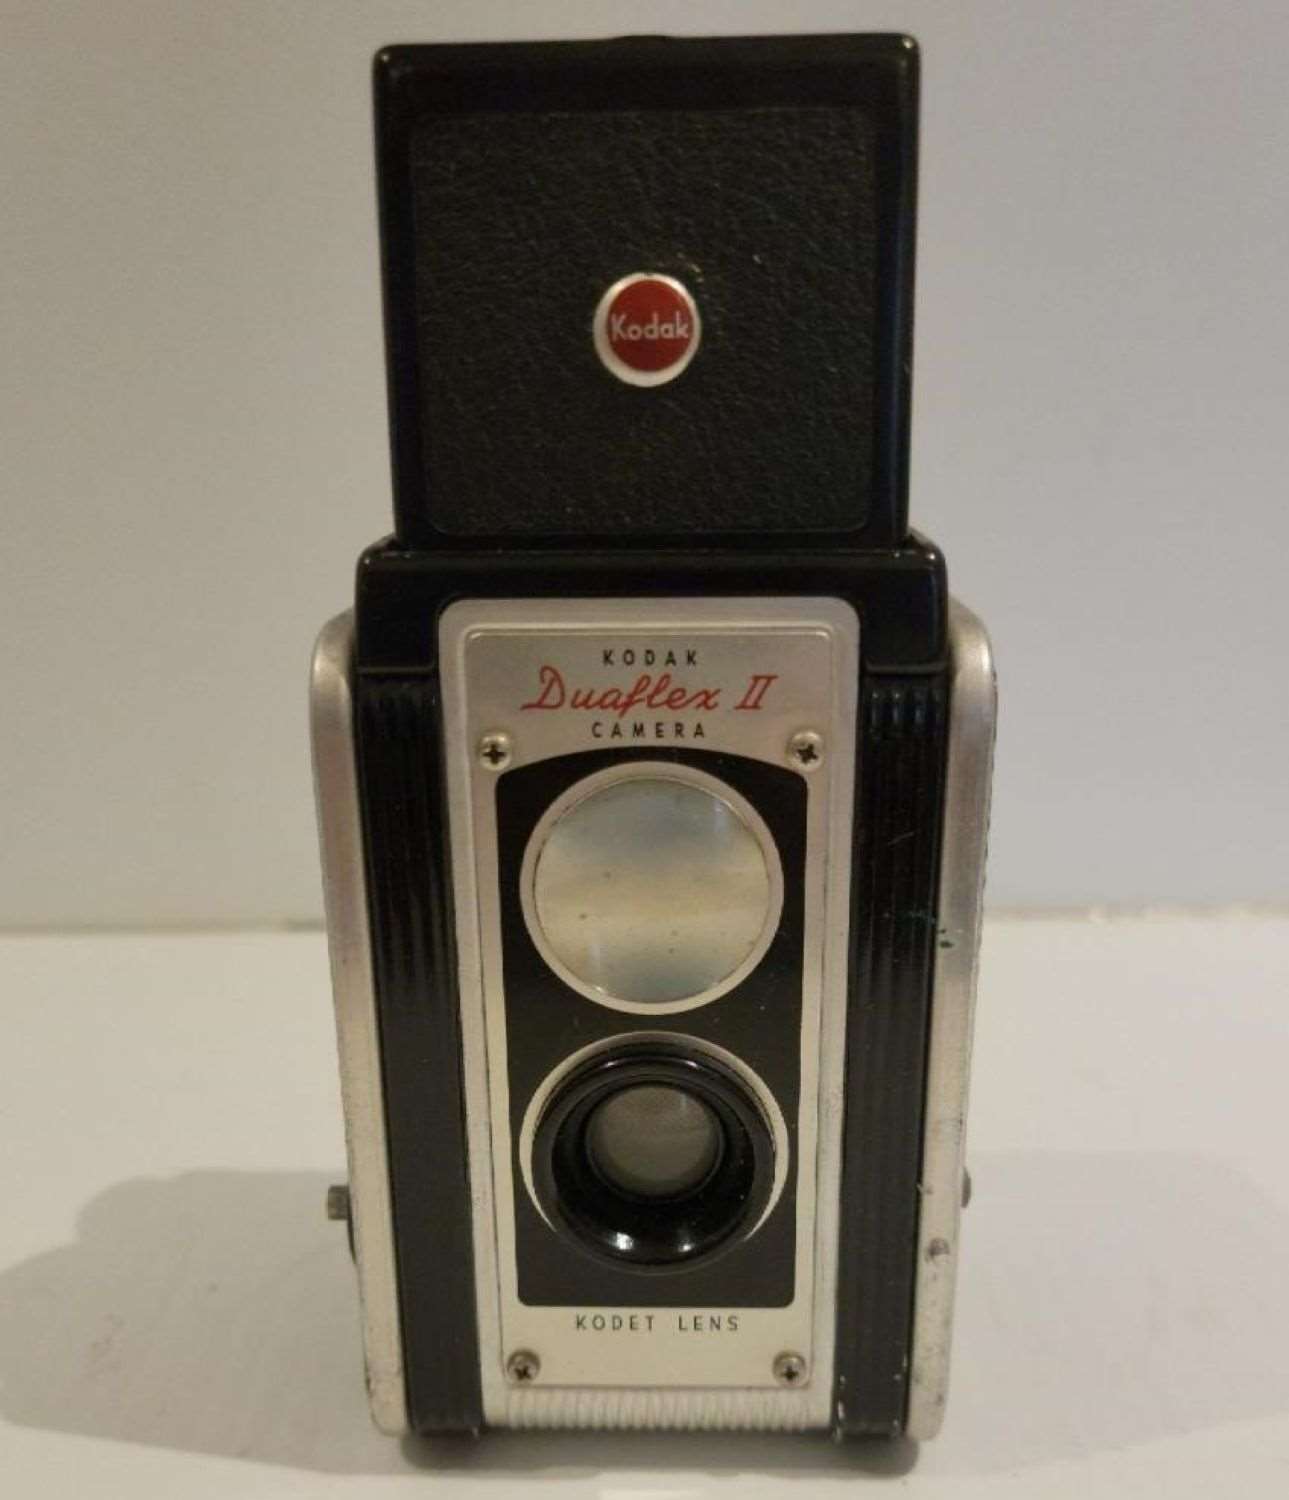 Kodak Duaflex II Camera with Leather Case (Vintage)